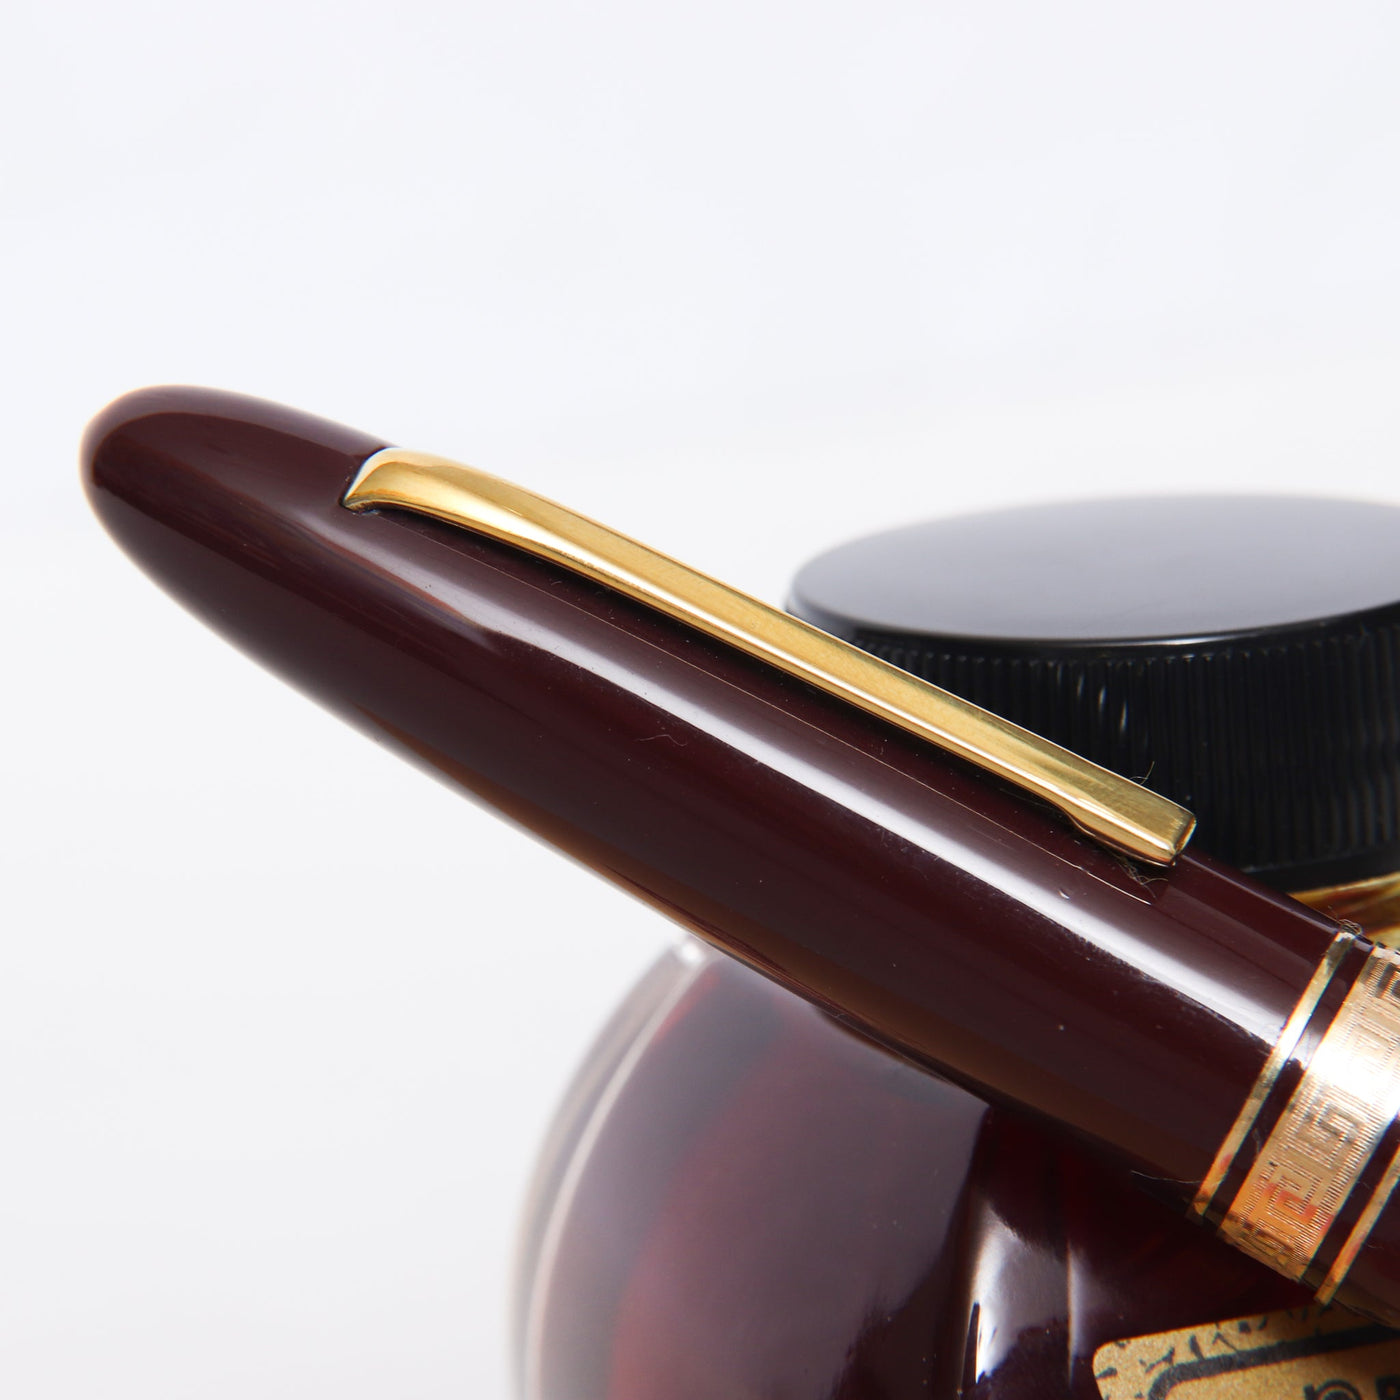 Omas 557S Burgundy & Gold Fountain Pen - Preowned Clip